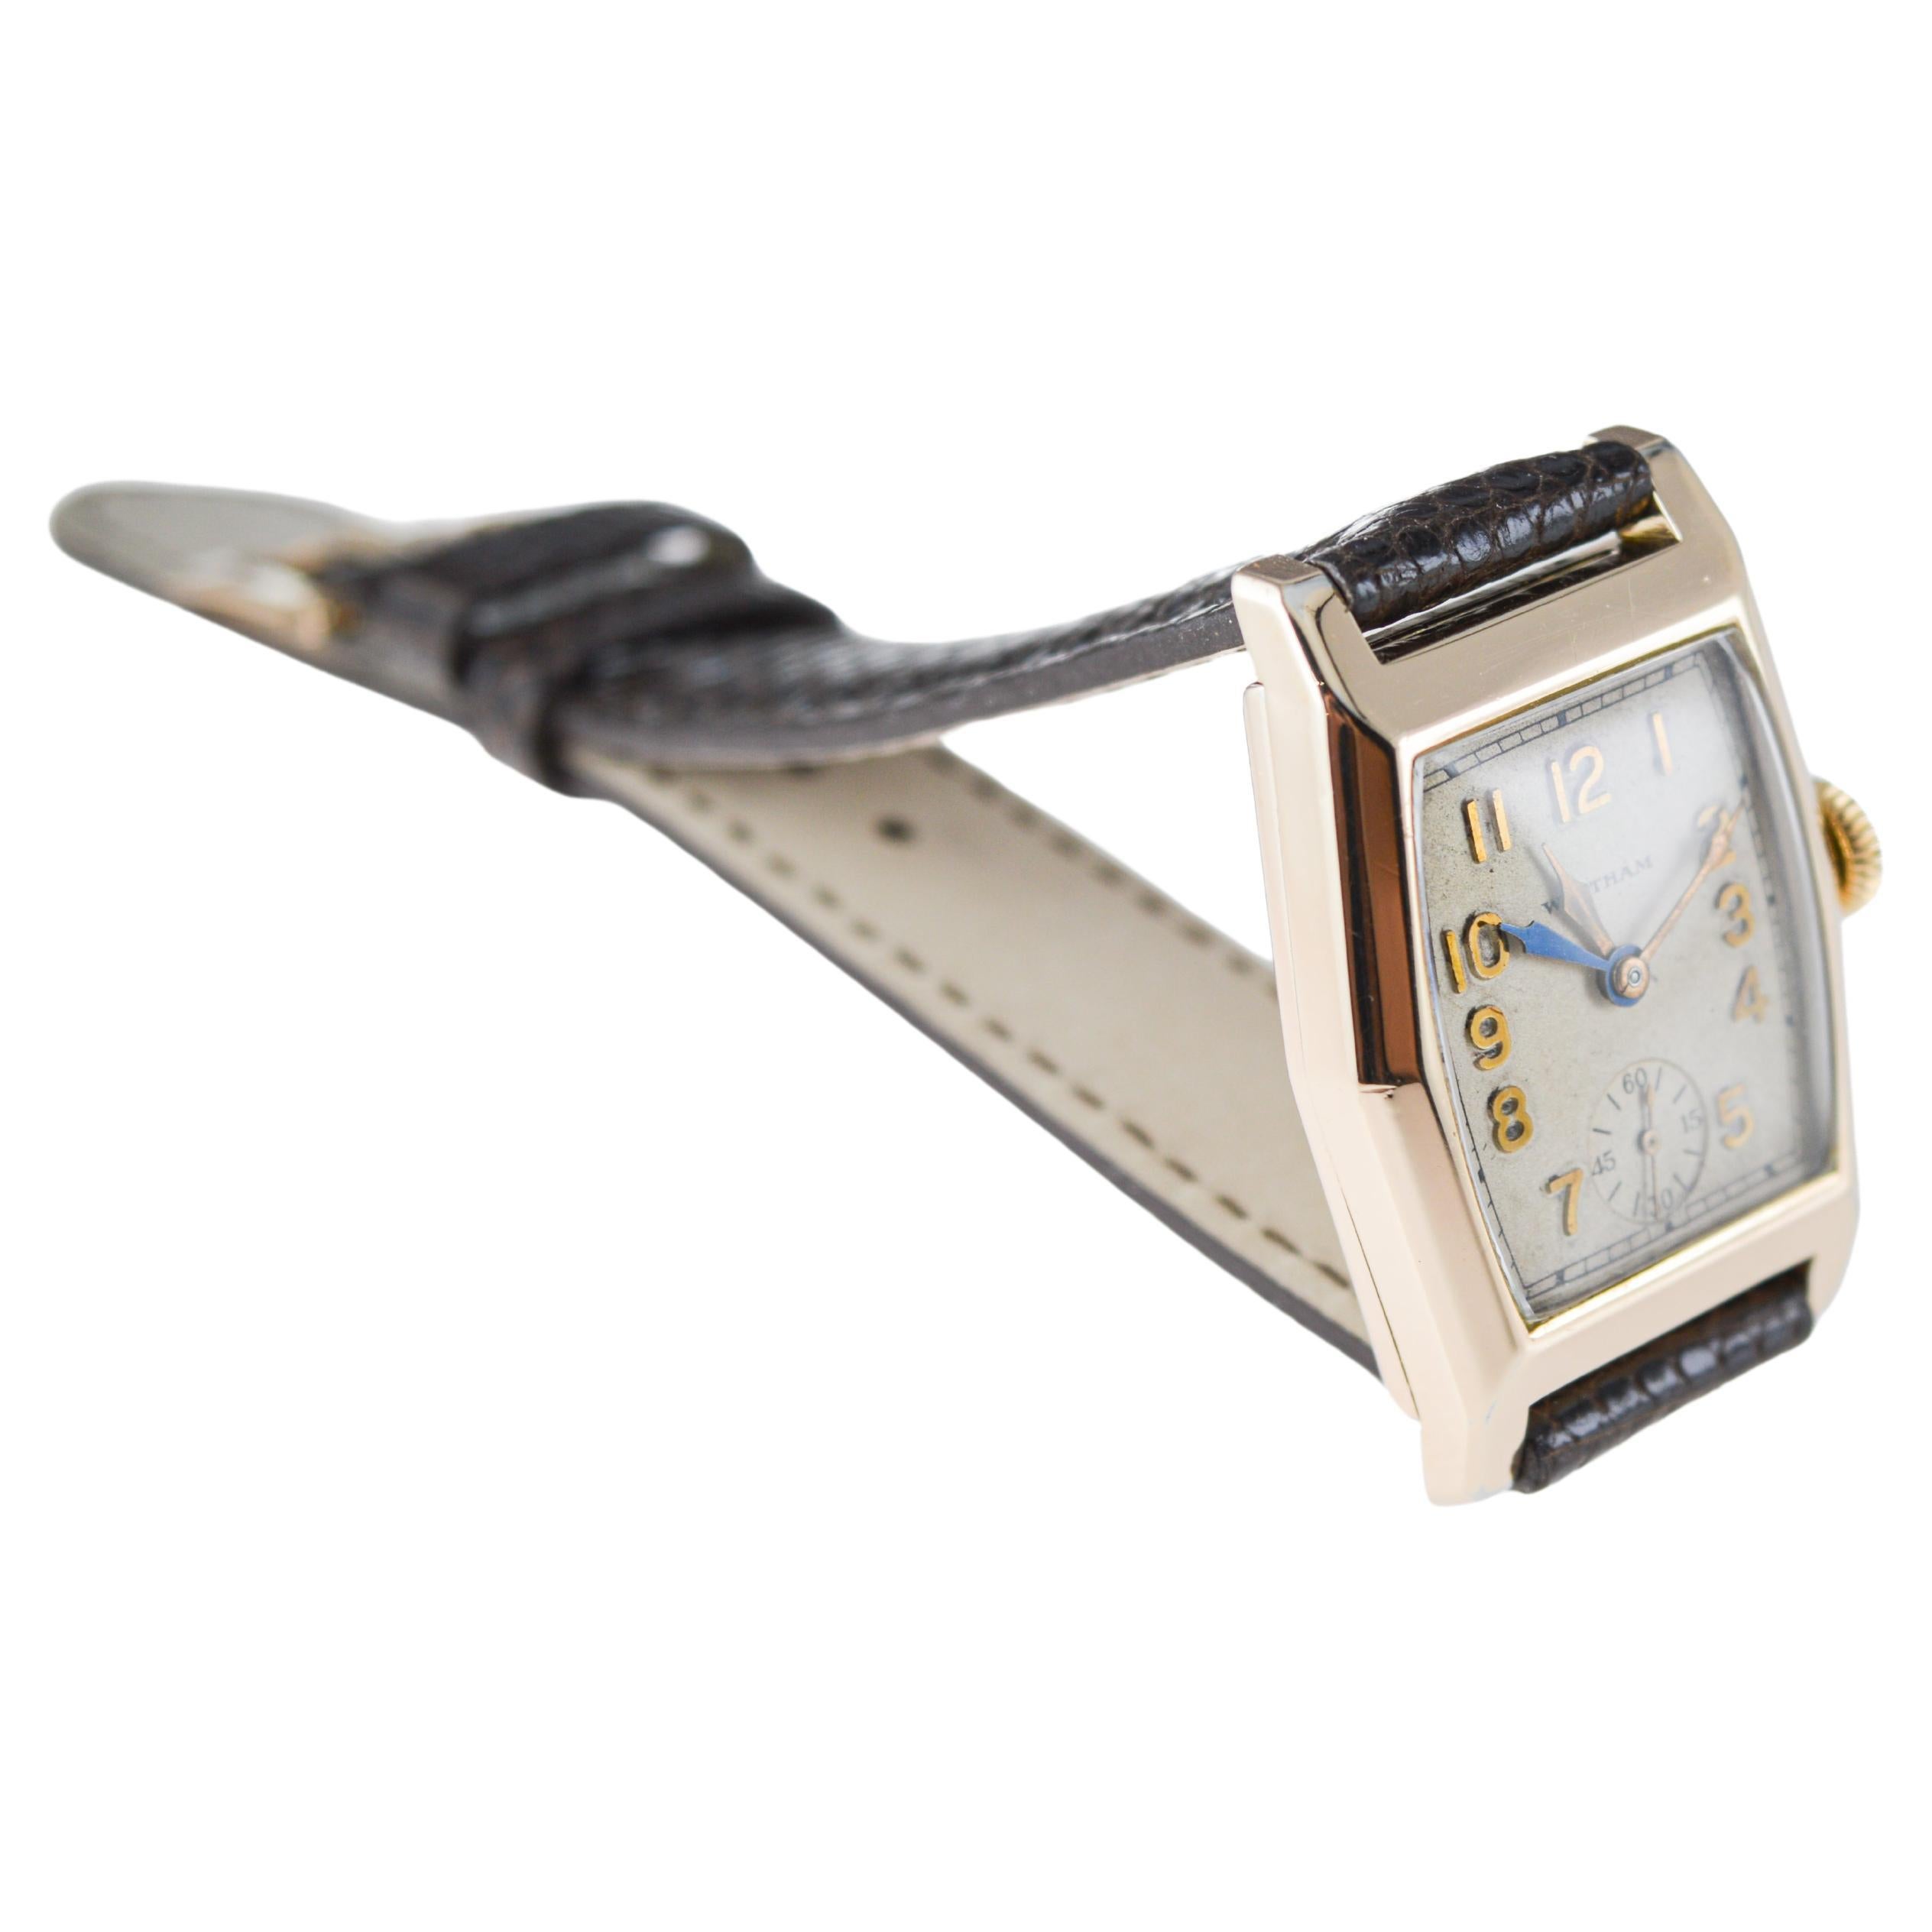 Waltham Yellow Gold Filled Art Deco Dual Time Watch with Original Dial and Strap (Montre à double fuseau horaire avec cadran et bracelet d'origine) 6